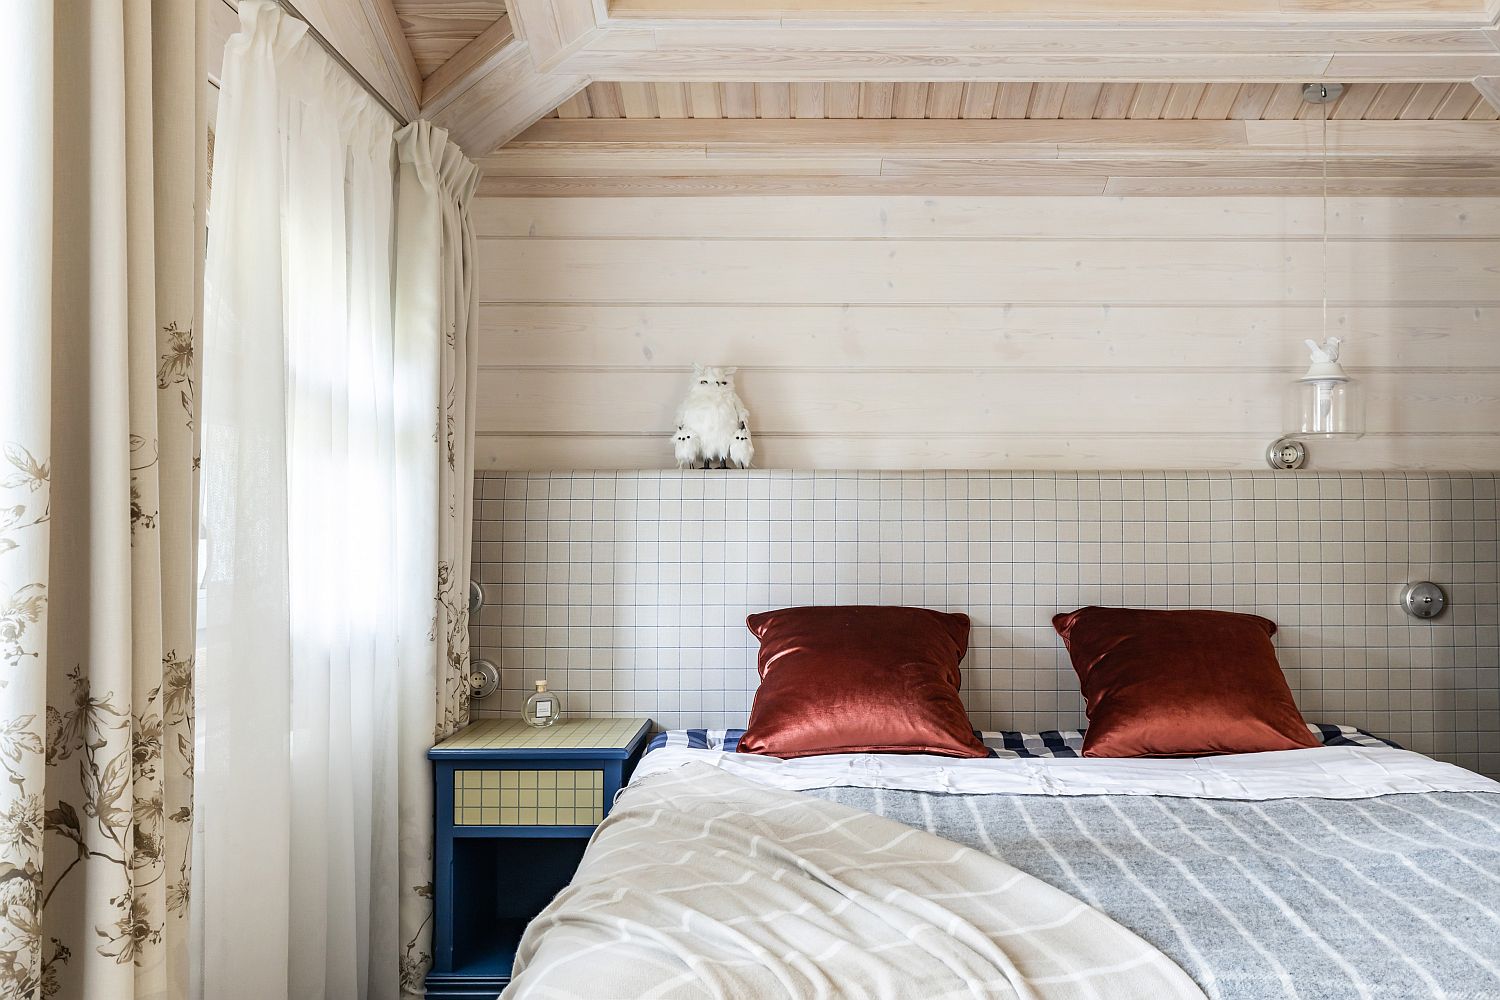 Hình ảnh phòng ngủ nhỏ với giường đặt sát tường ốp gạch, bộ gối màu đồng thau, cạnh đó là rèm cửa hai lớp.